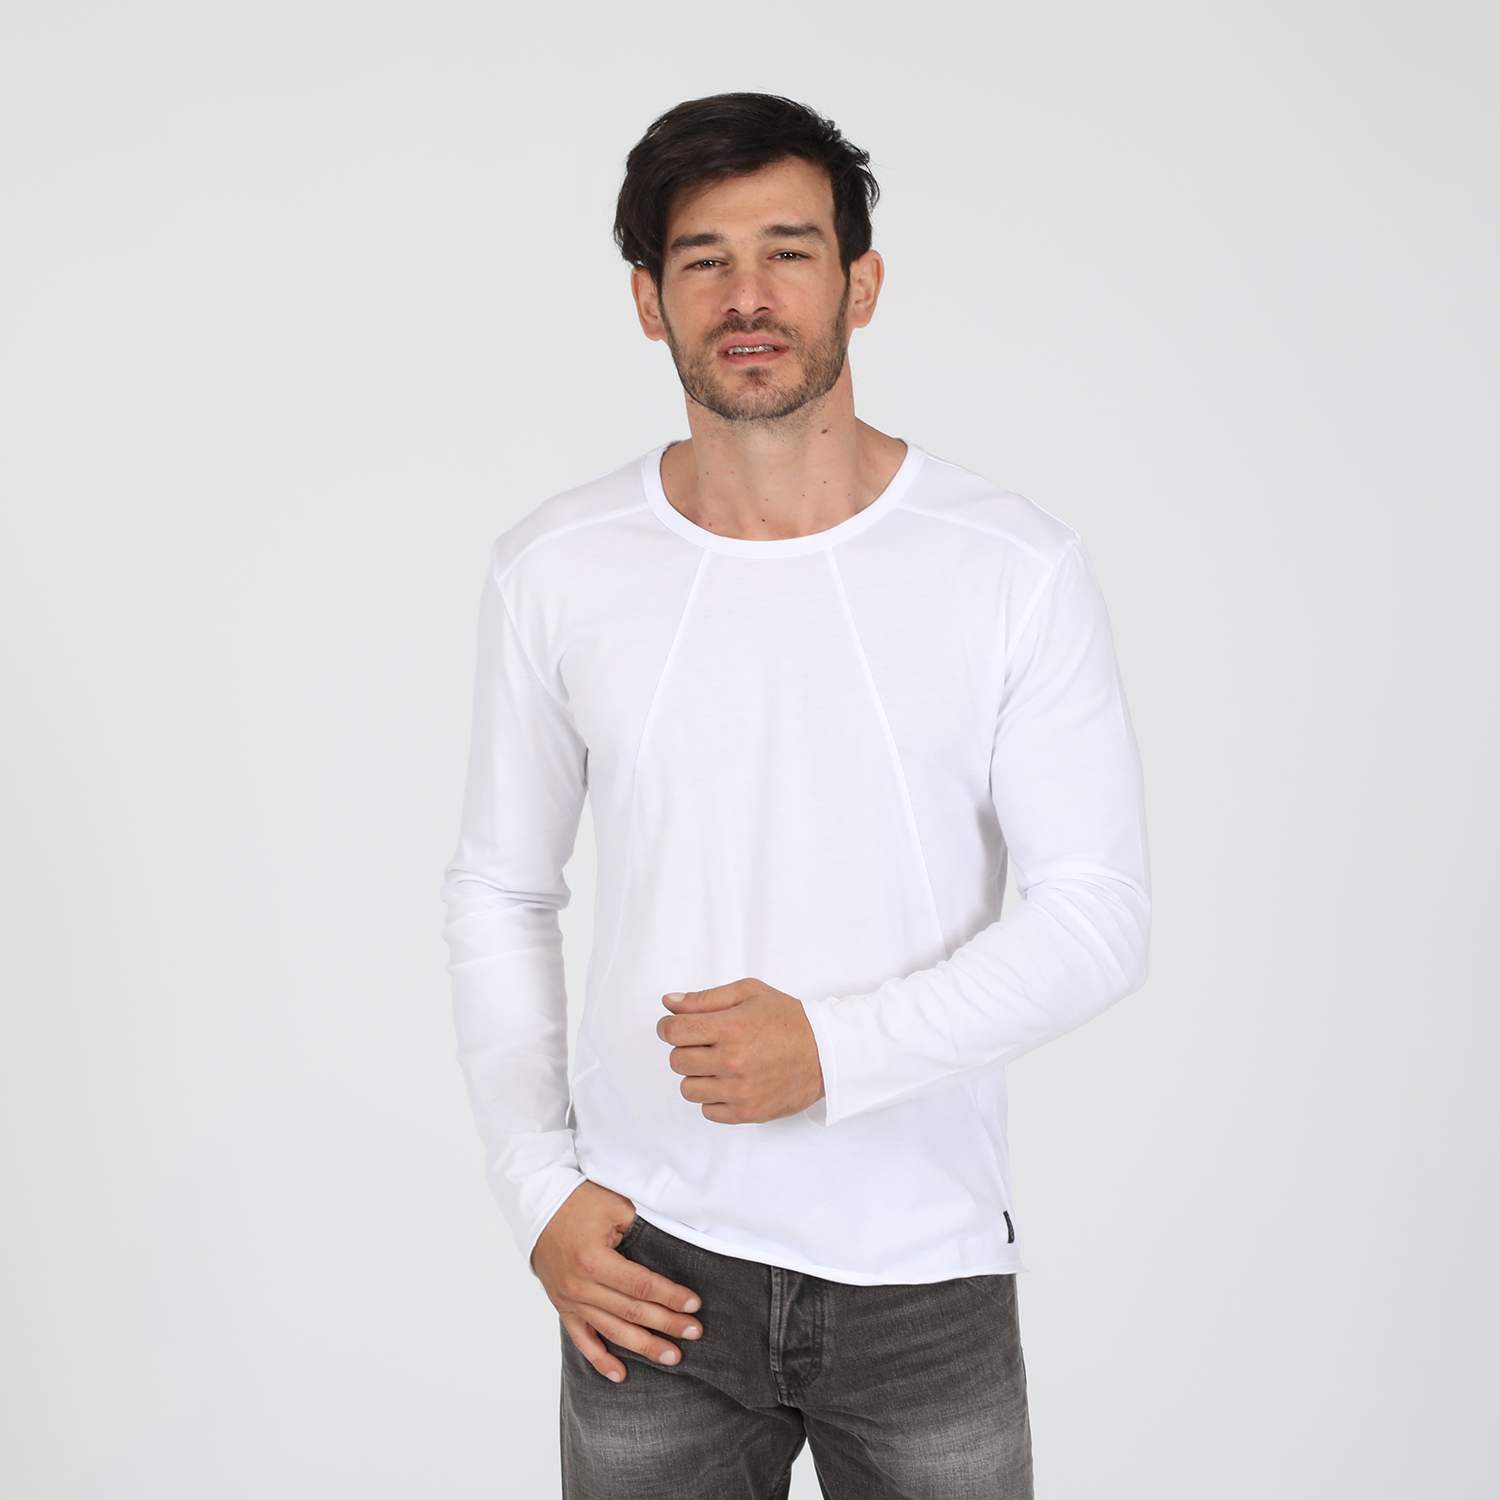 Ανδρικά/Ρούχα/Μπλούζες/Μακρυμάνικες DIRTY LAUNDRY - Ανδρική μπλούζα DIRTY LAUNDRY MODAL VERTICAL STITCHES λευκή